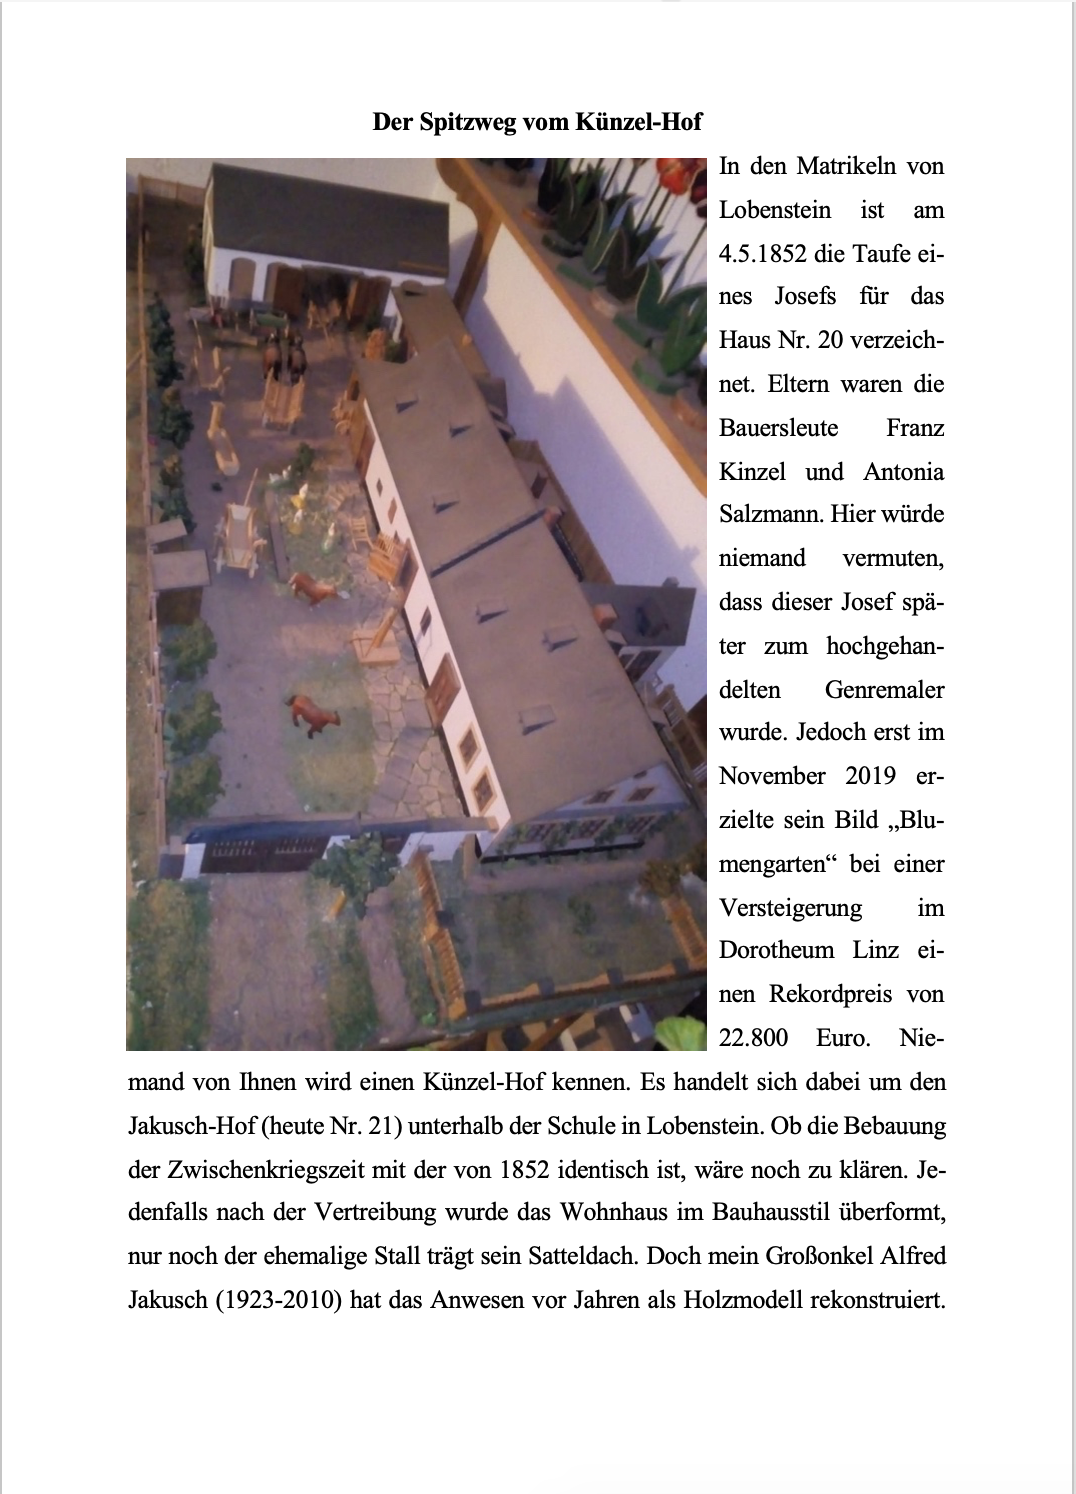 Gerne sende ich eine Ausgabe des Jägerndorfer Heimatbriefes zu: LorenzLoserth@googlemail.com